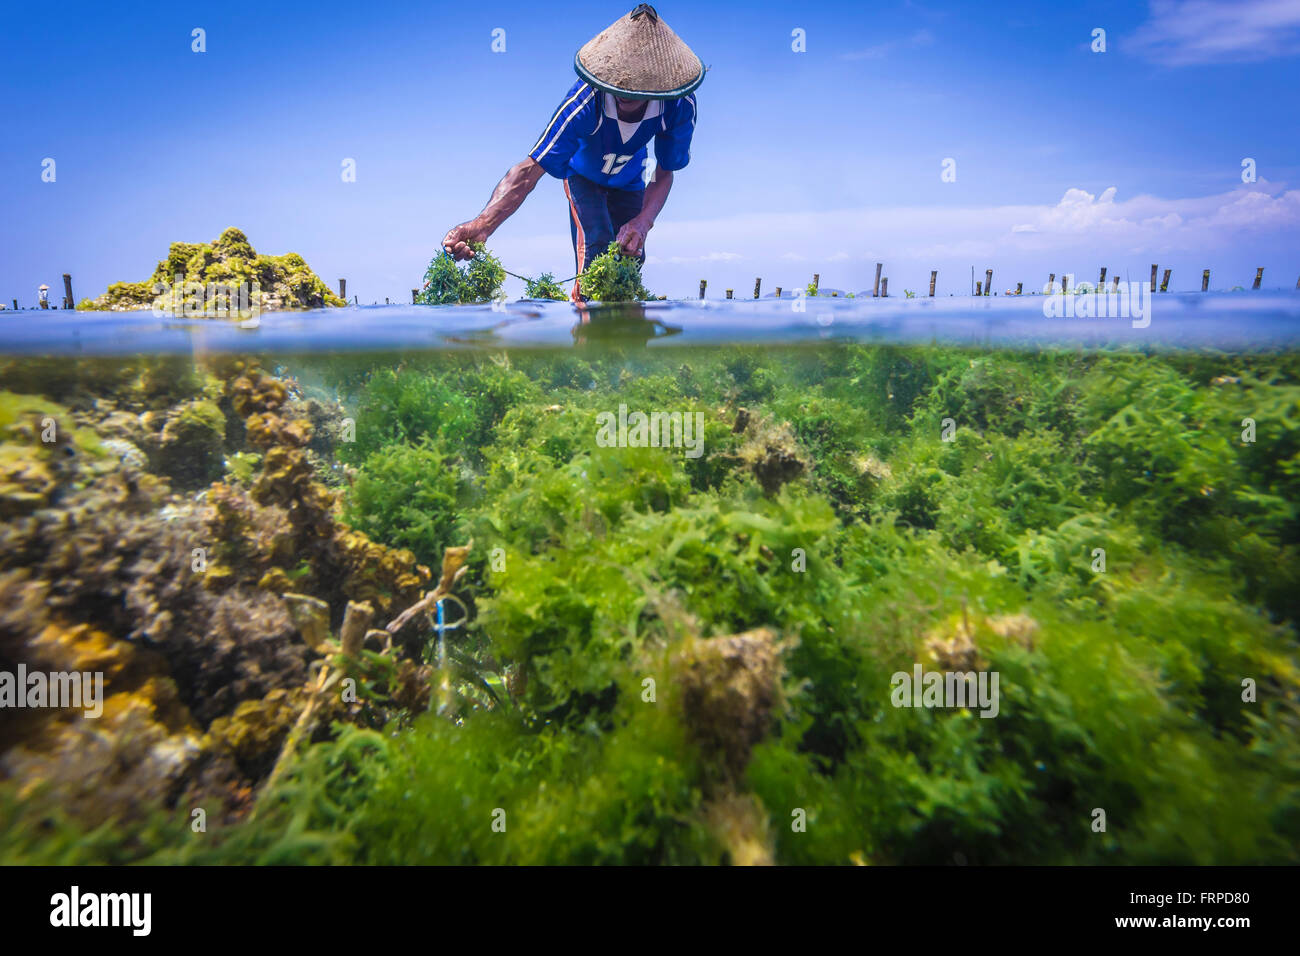 Fattoria di alghe marine. Sumbawa. Indonesia. Foto Stock